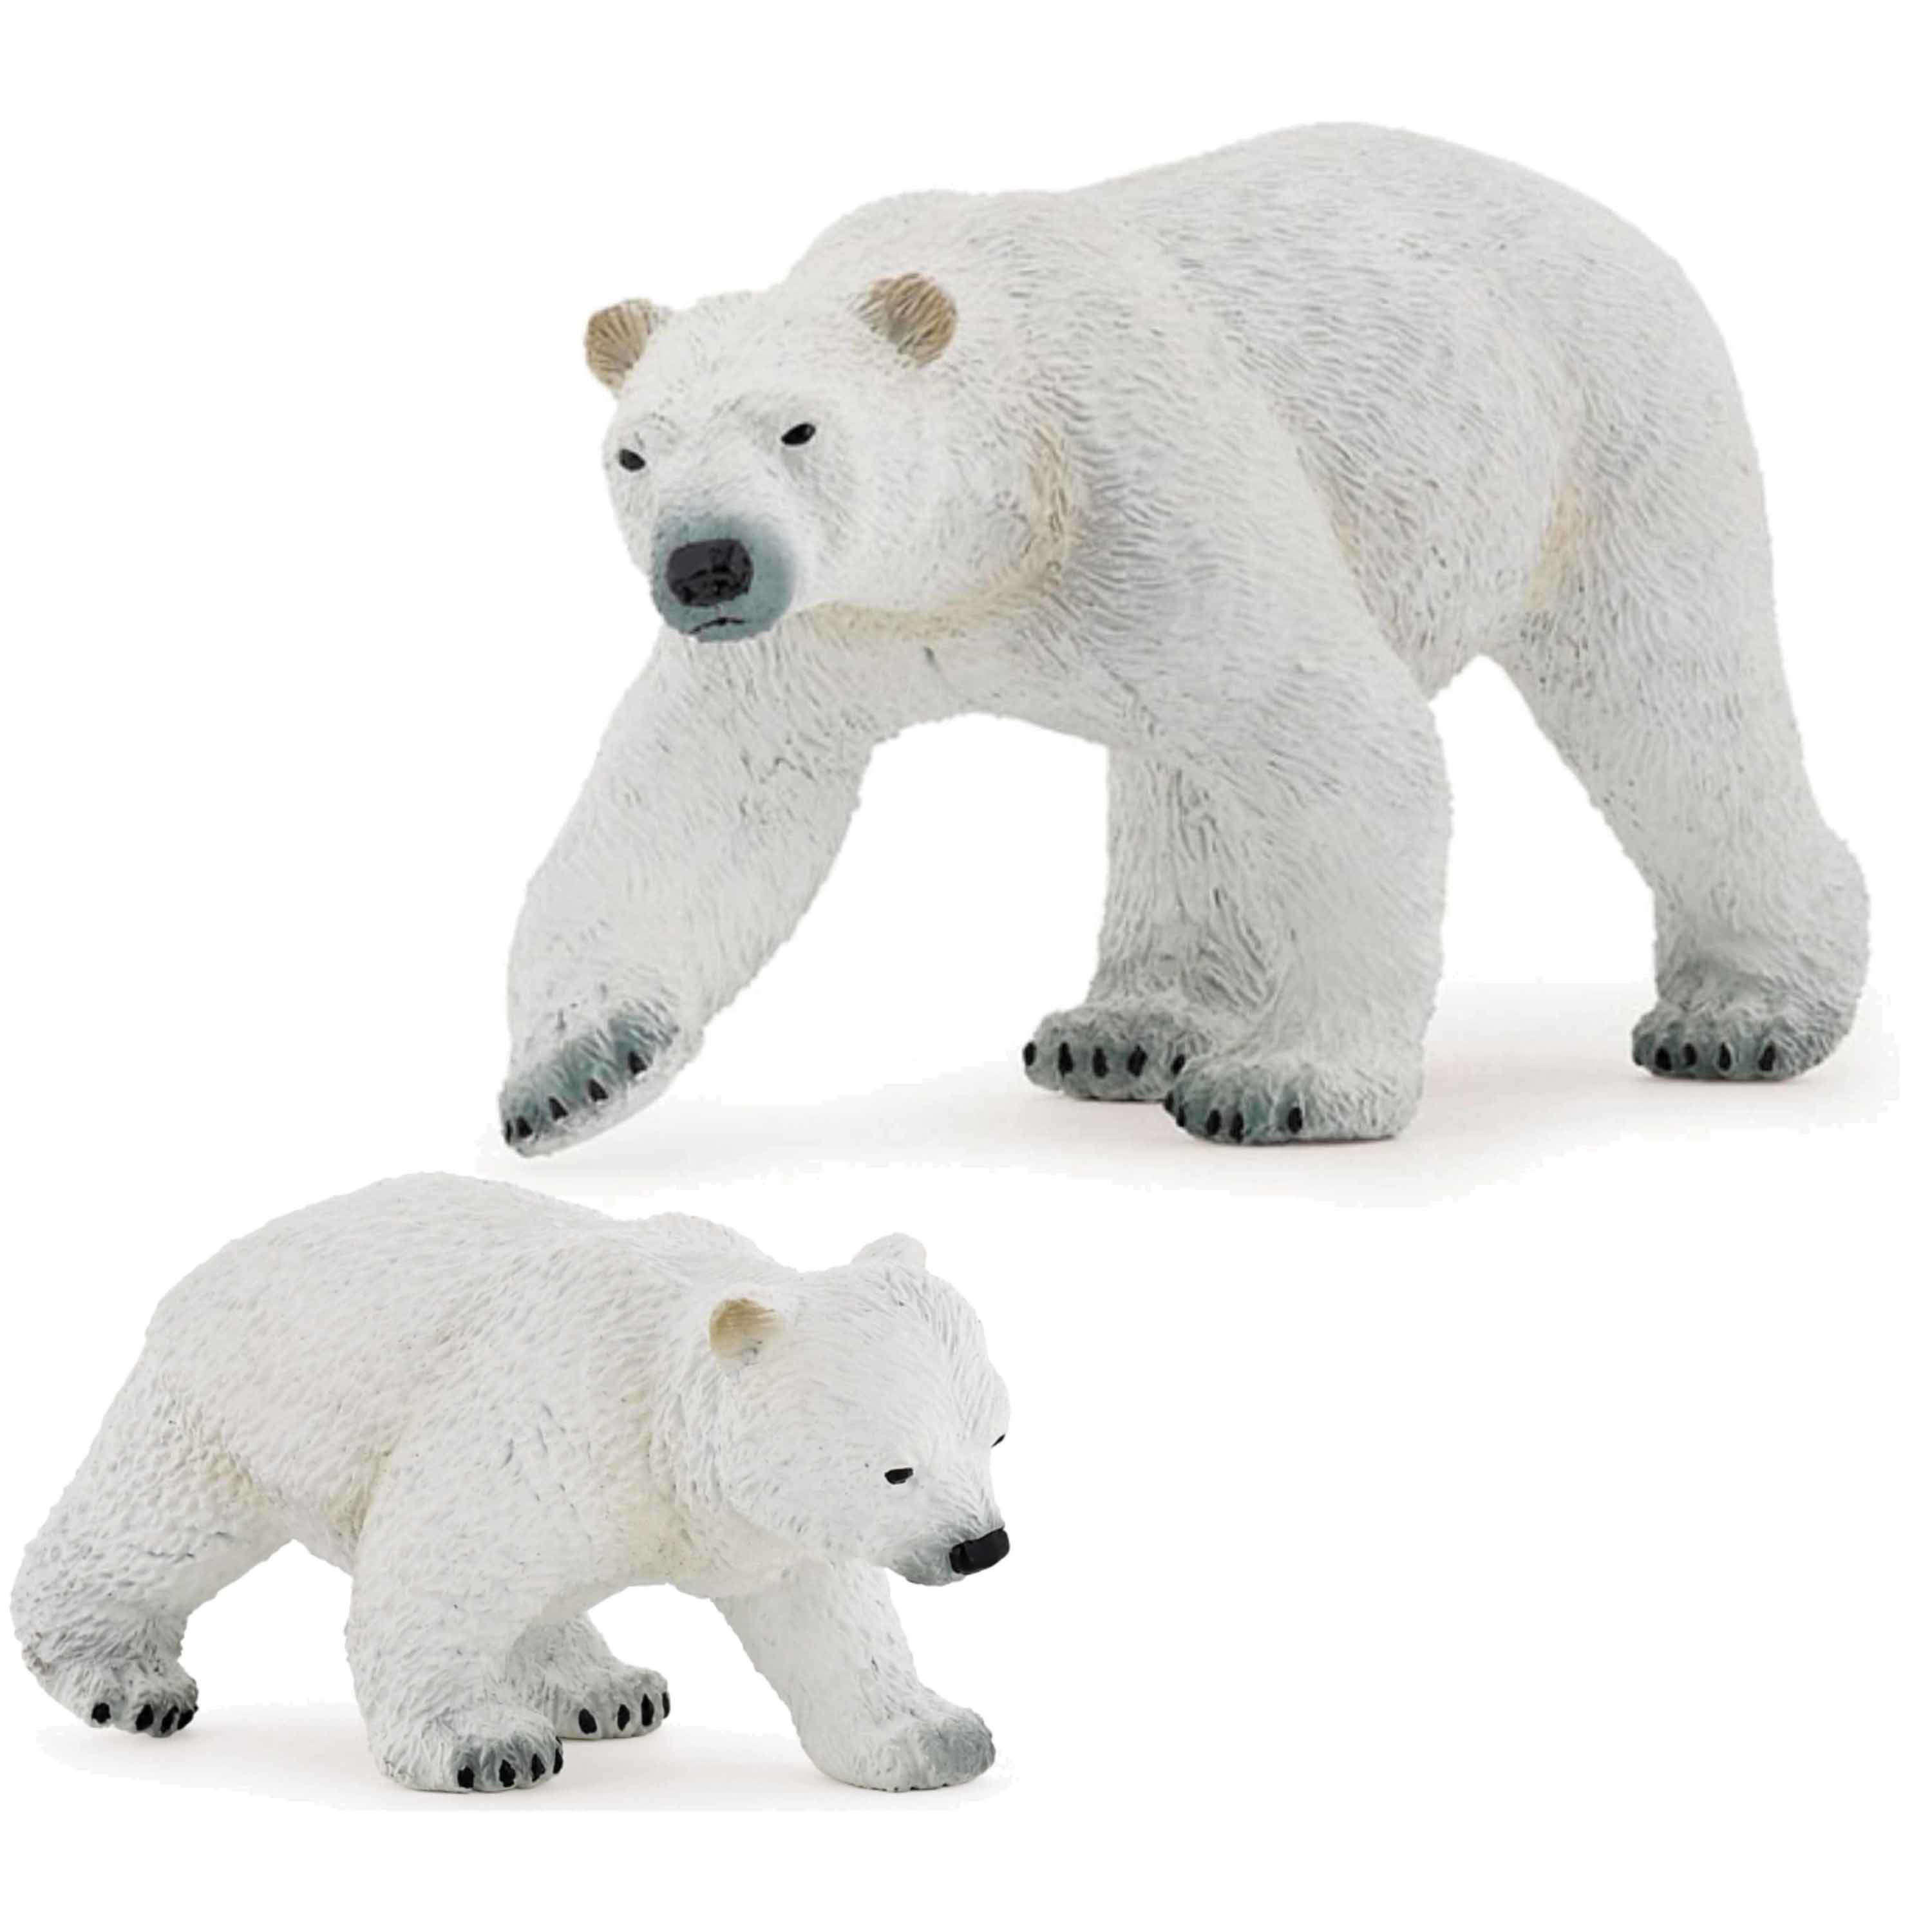 Plastic speelgoed figuren setje ijsbeer en baby-kind 14 en 8 cm